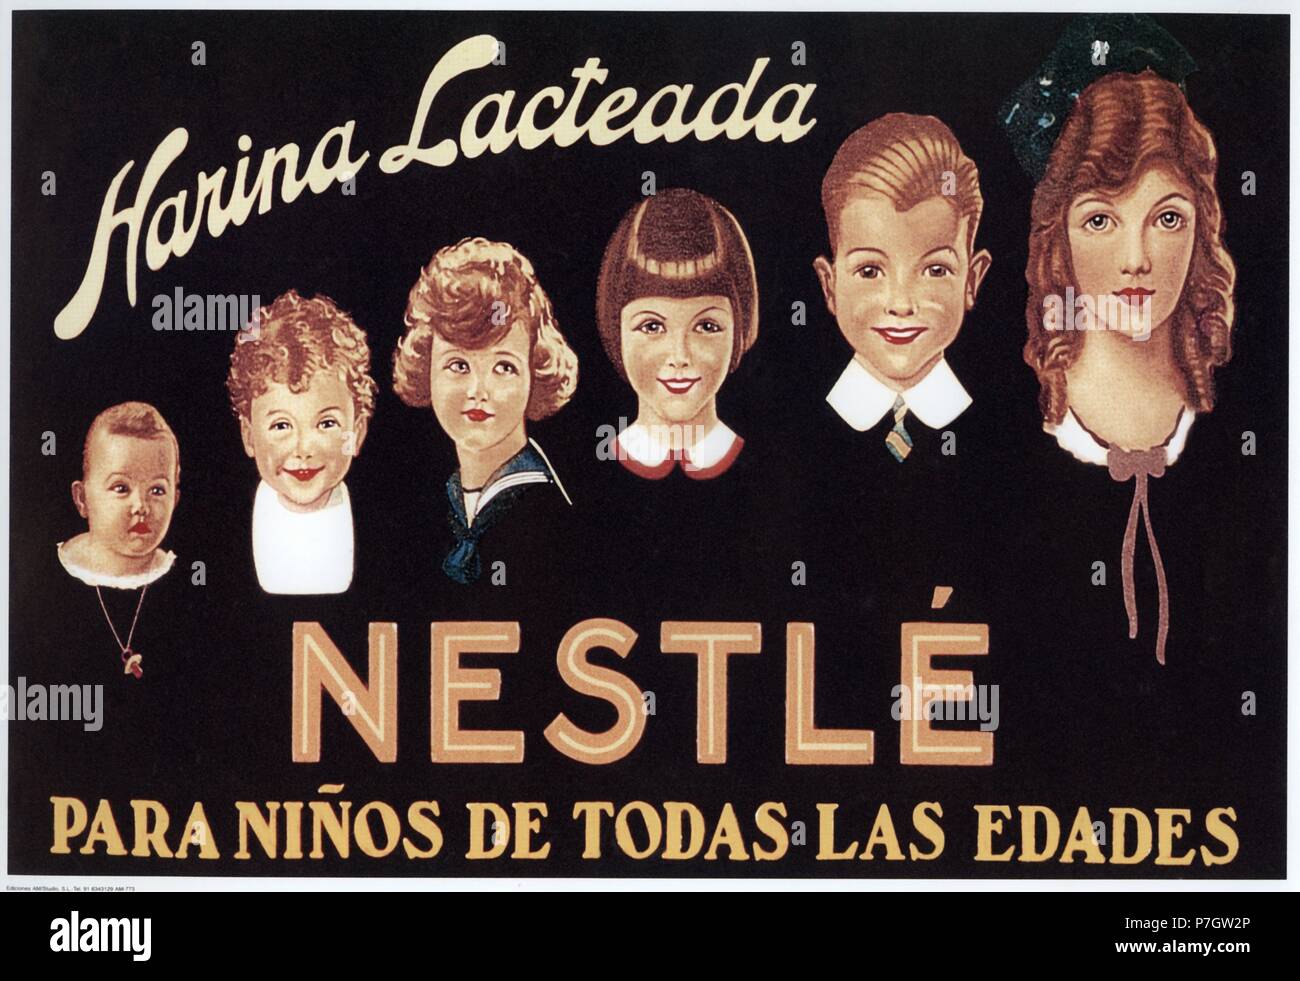 Publicidad. Harina lacteada Nestlé; serie de rostros infantiles de edades progresivas. Años 1940. Stock Photo